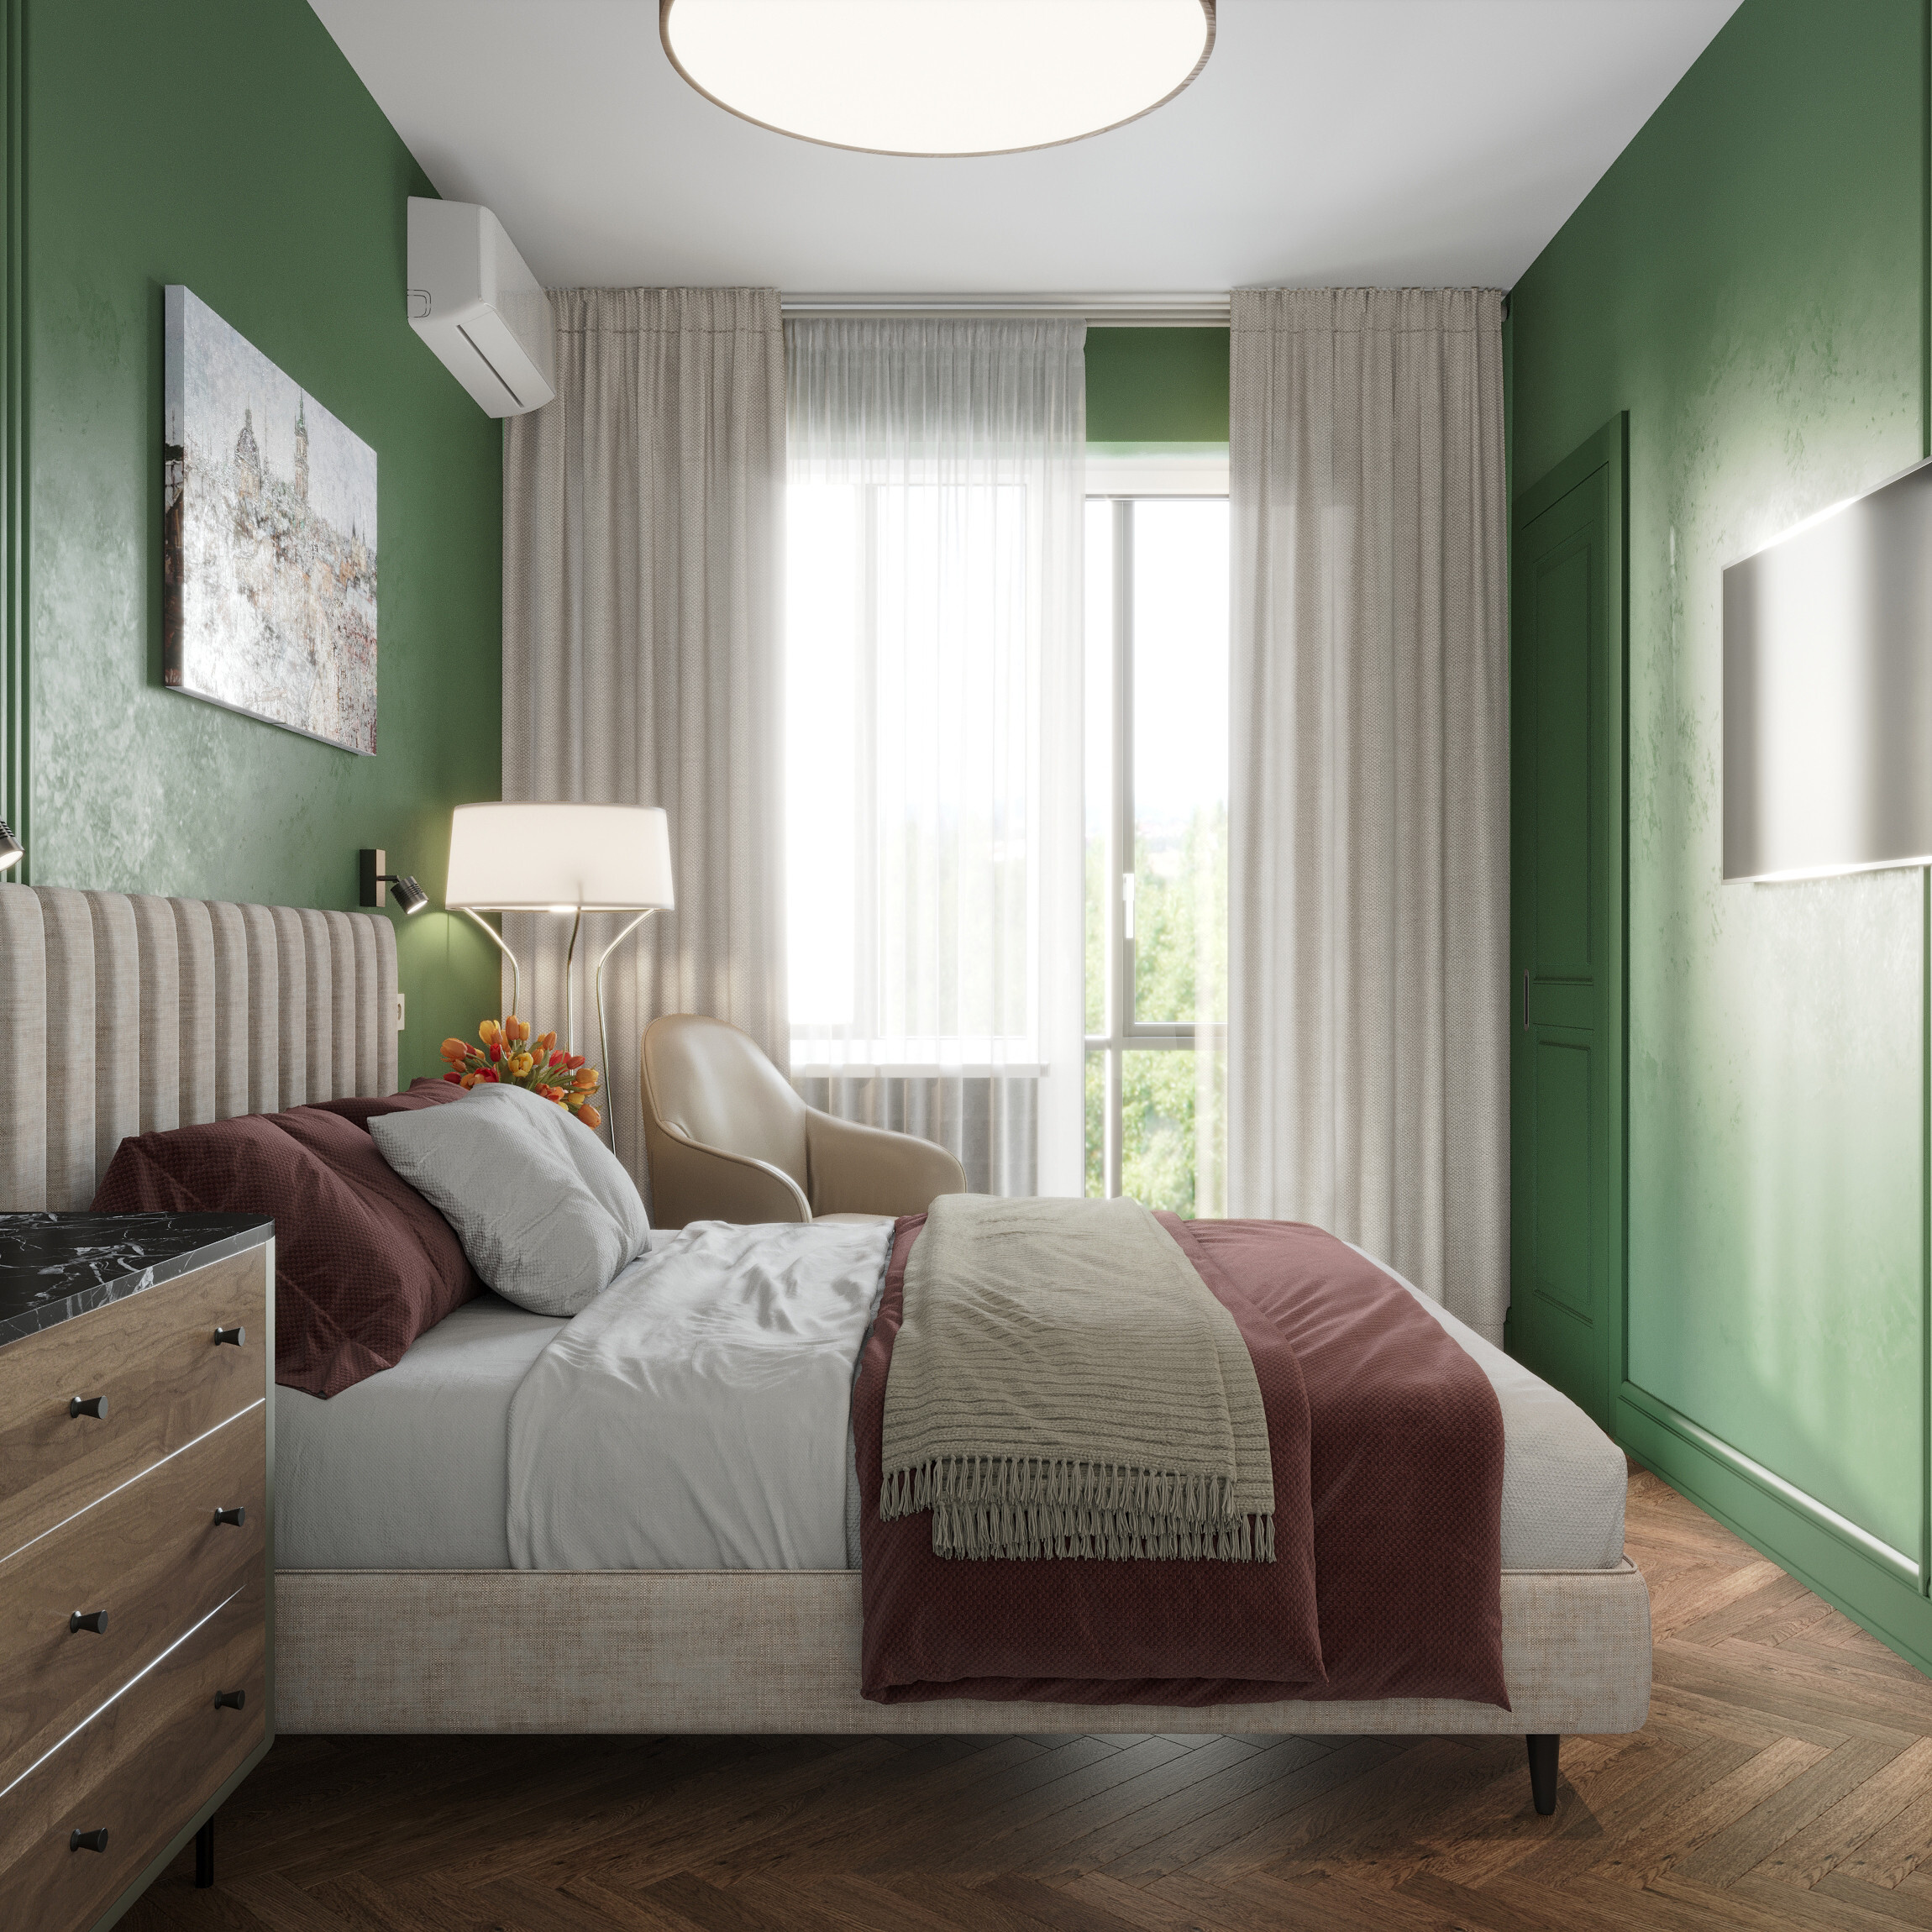 Интерьер спальни cветовыми линиями, подсветкой настенной, подсветкой светодиодной и светильниками над кроватью в ретро